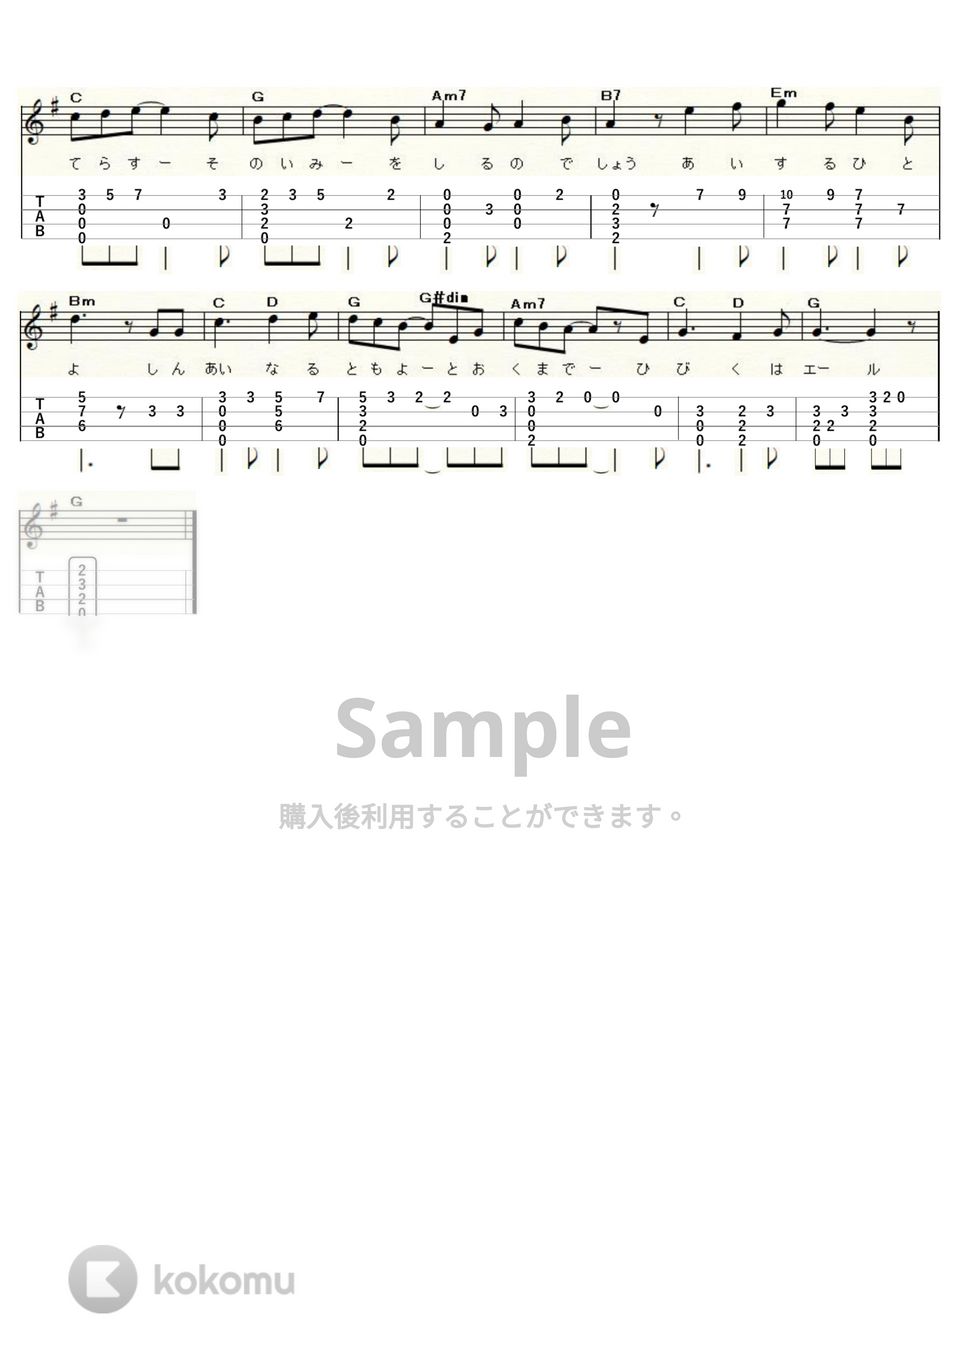 GReeeeN - 星影のエール (Low-G) by ukulelepapa